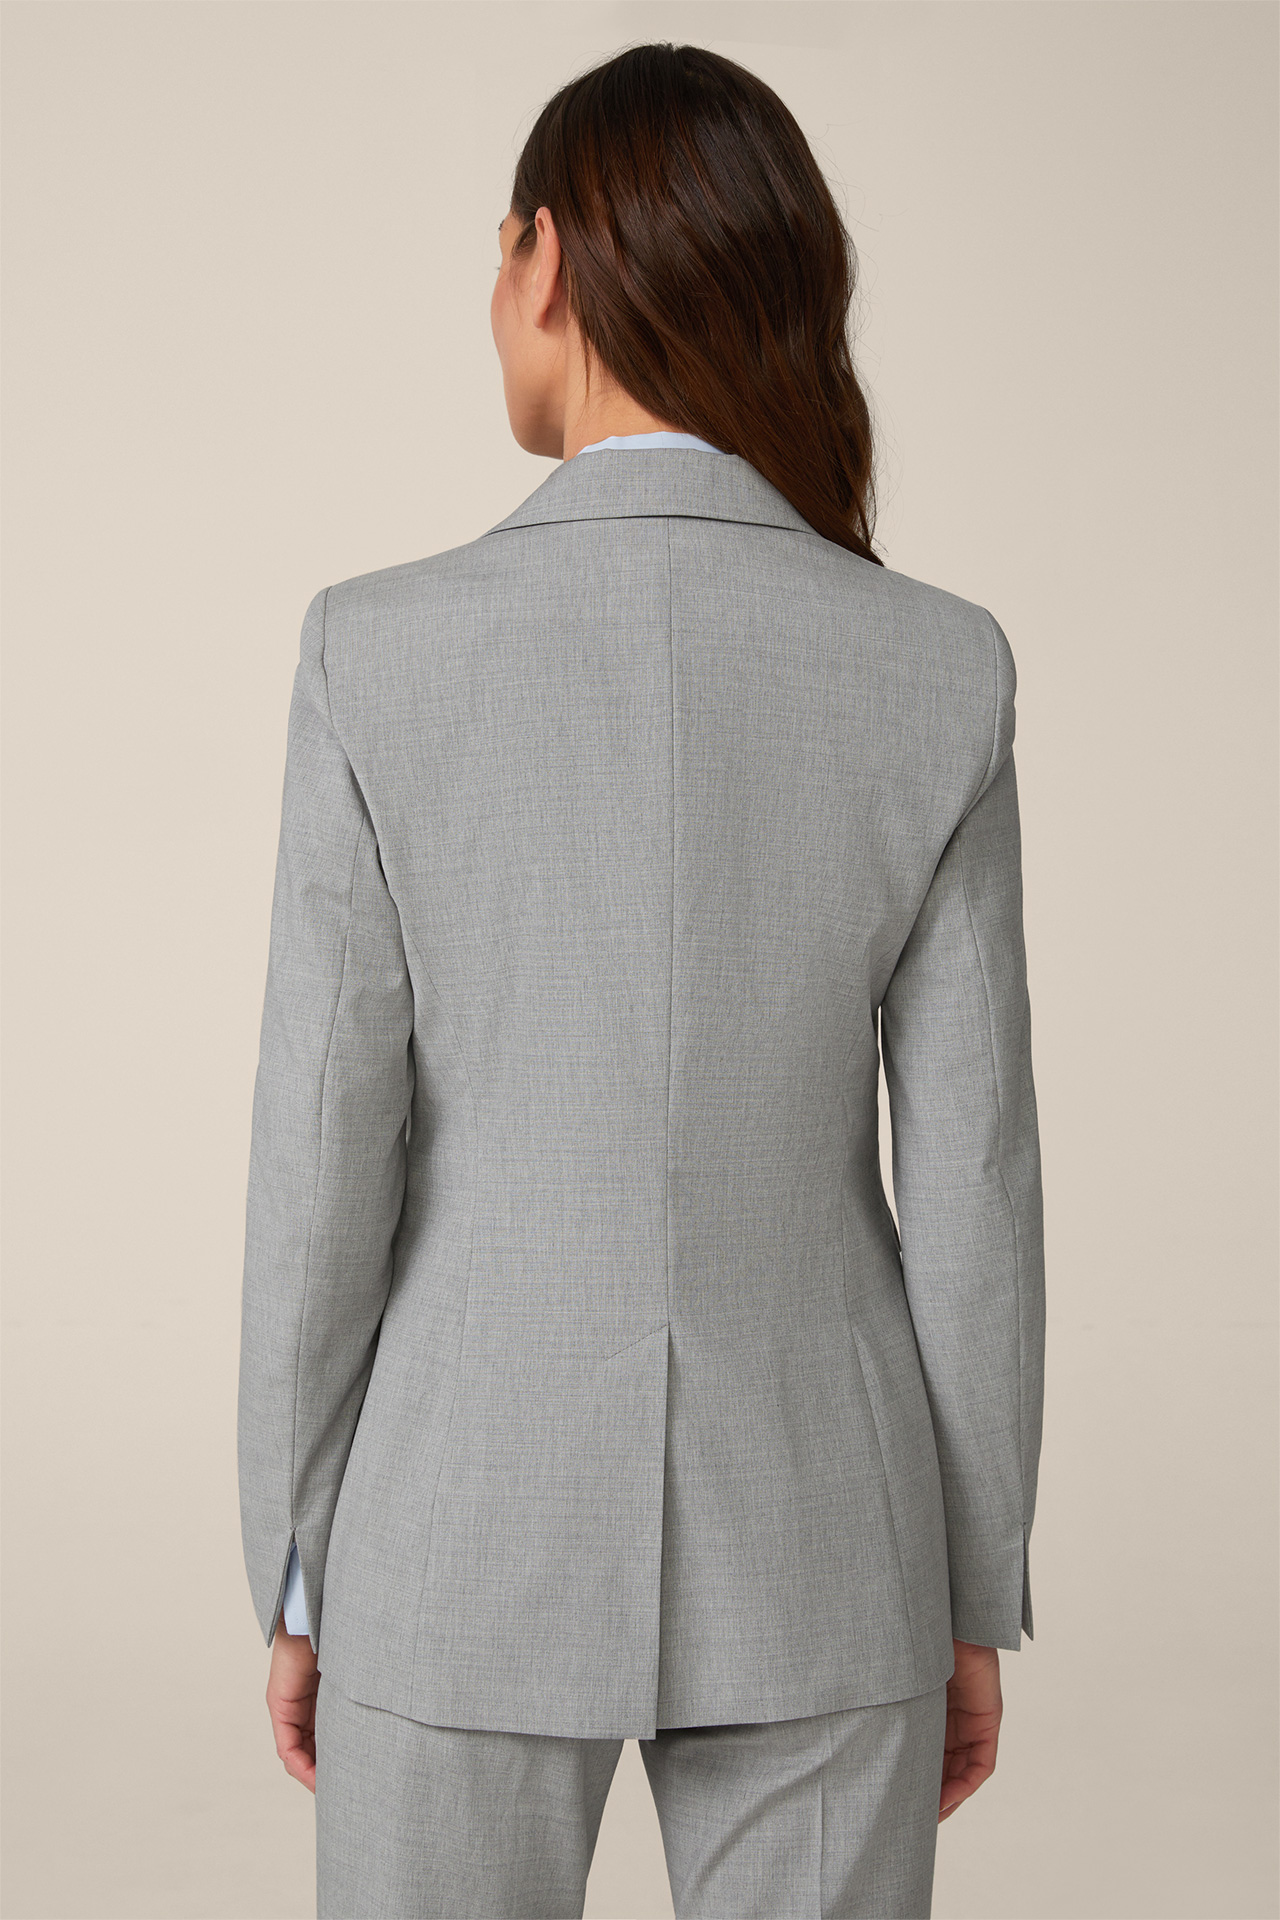 Wool Blend Longline Blazer in Light Grey Melange